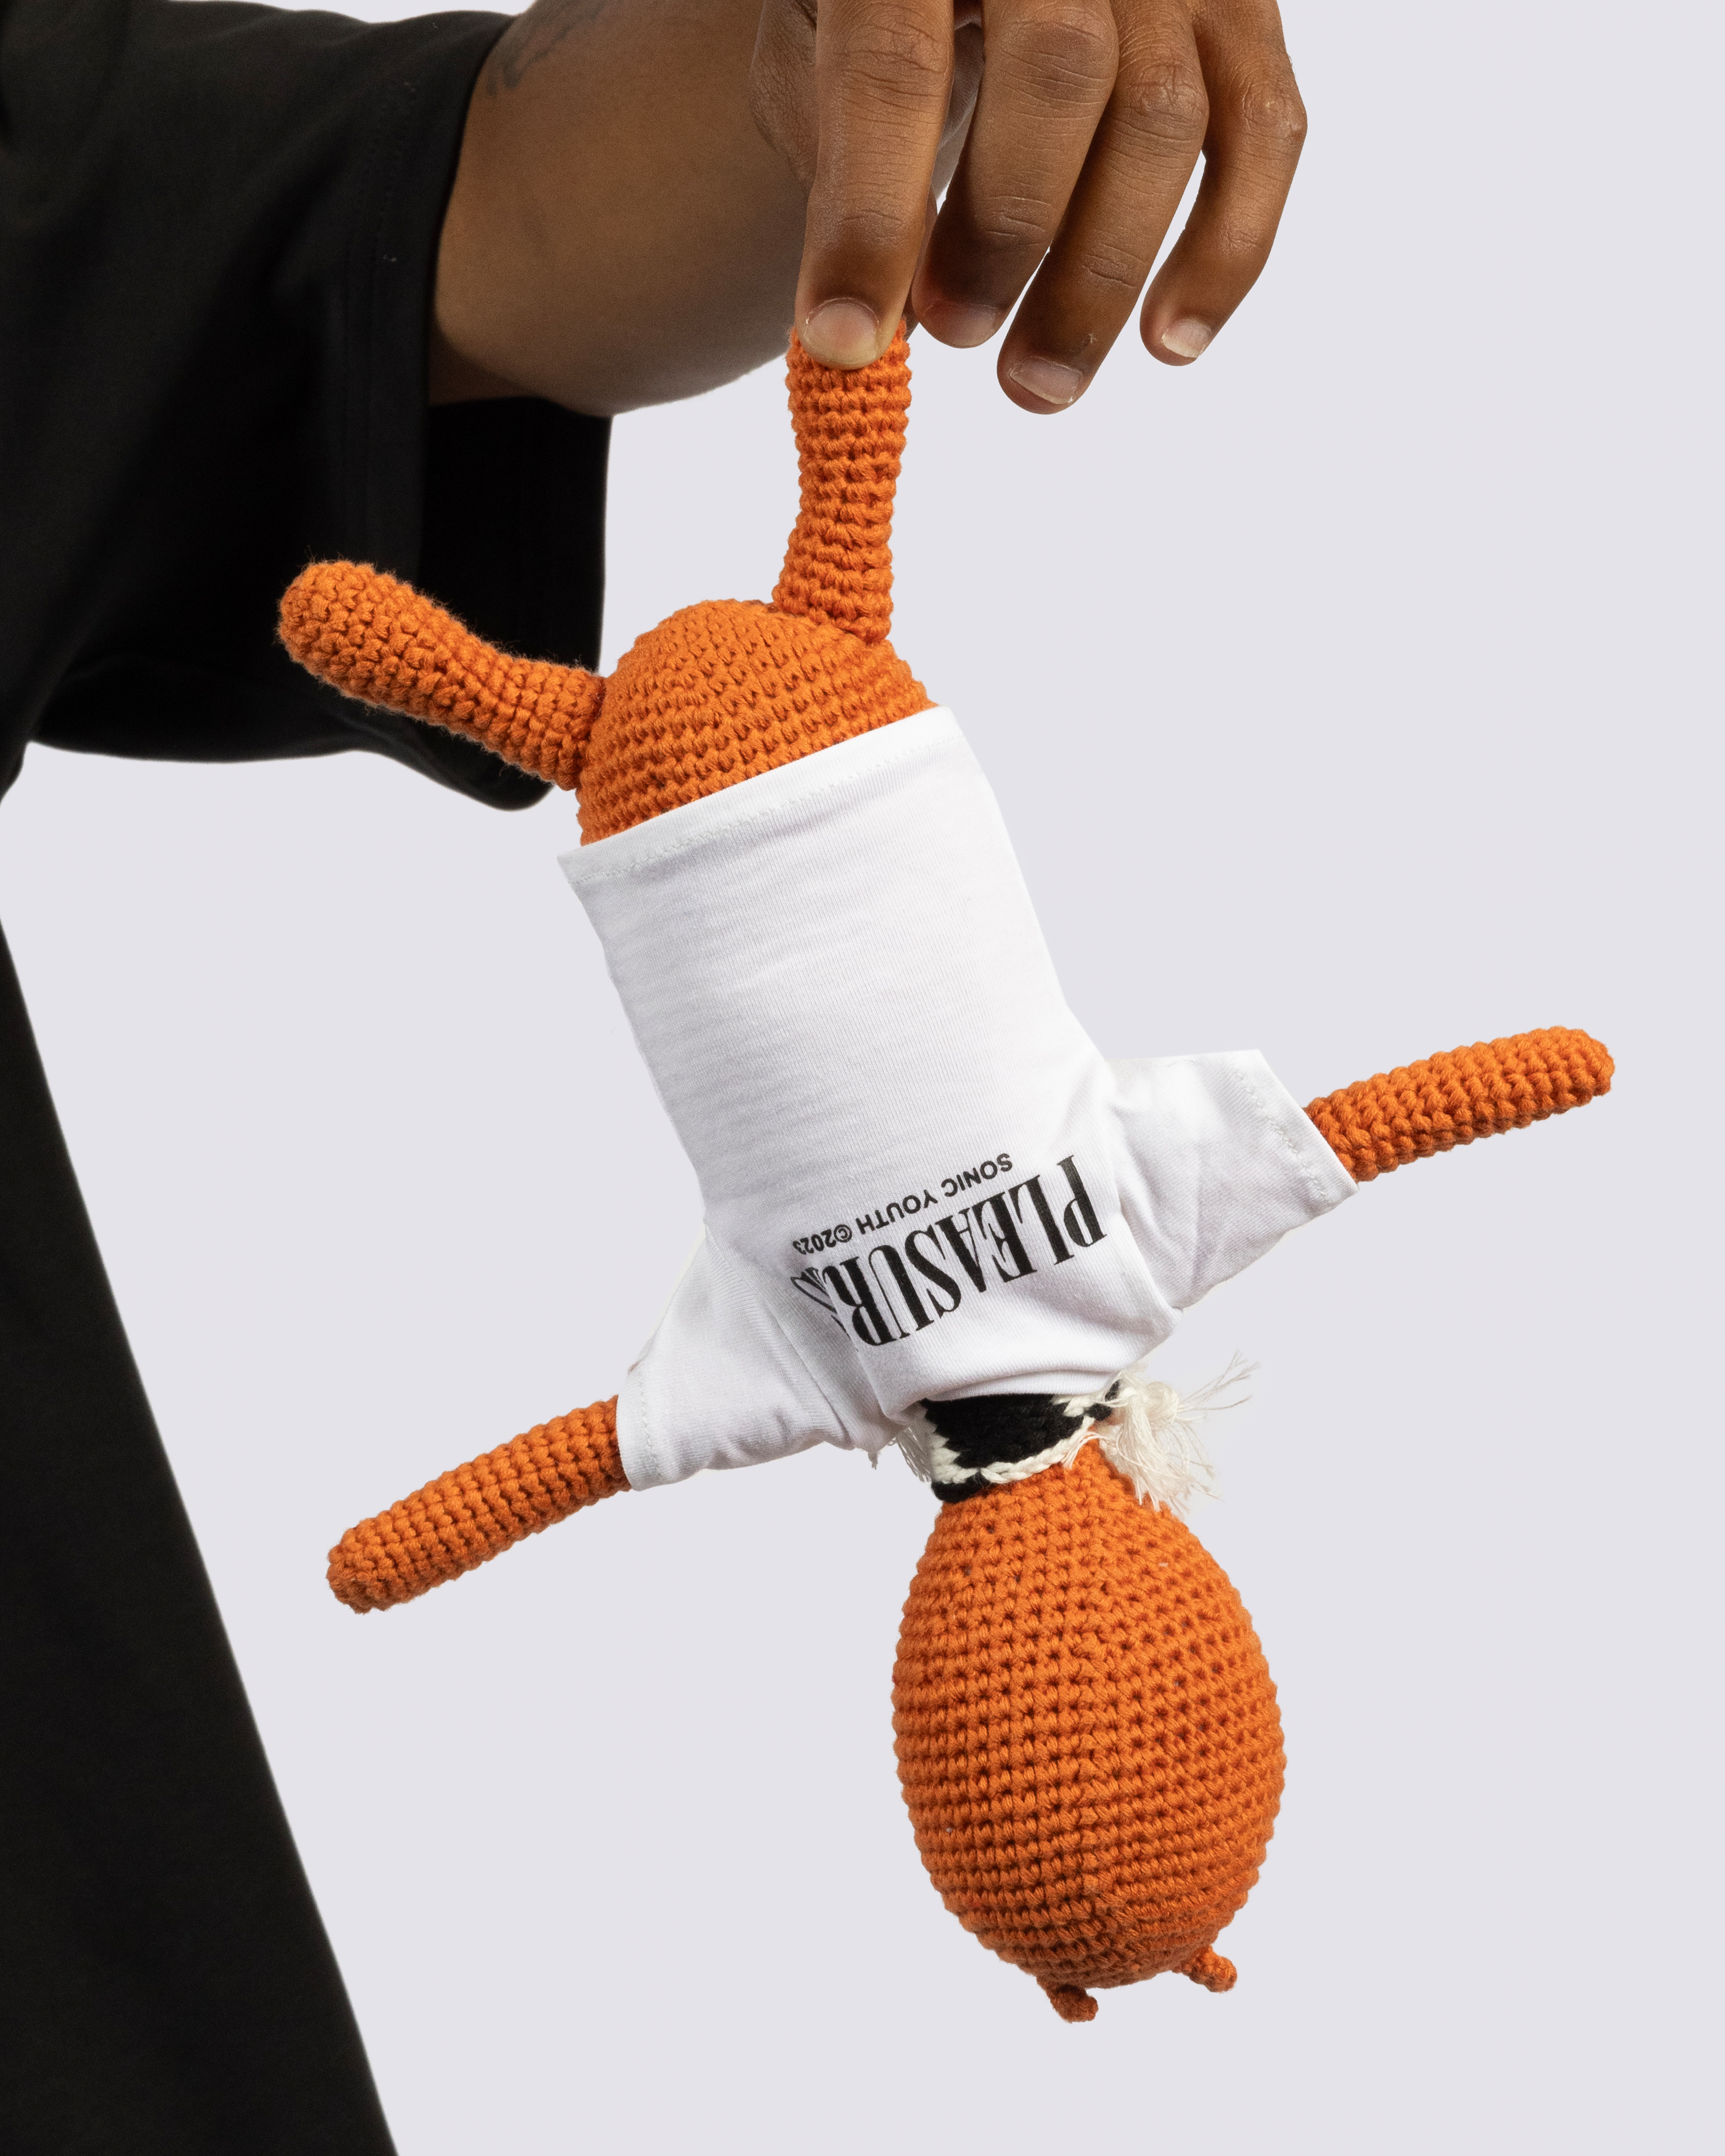 Sonic Youth Alien Crochet Doll - Orange